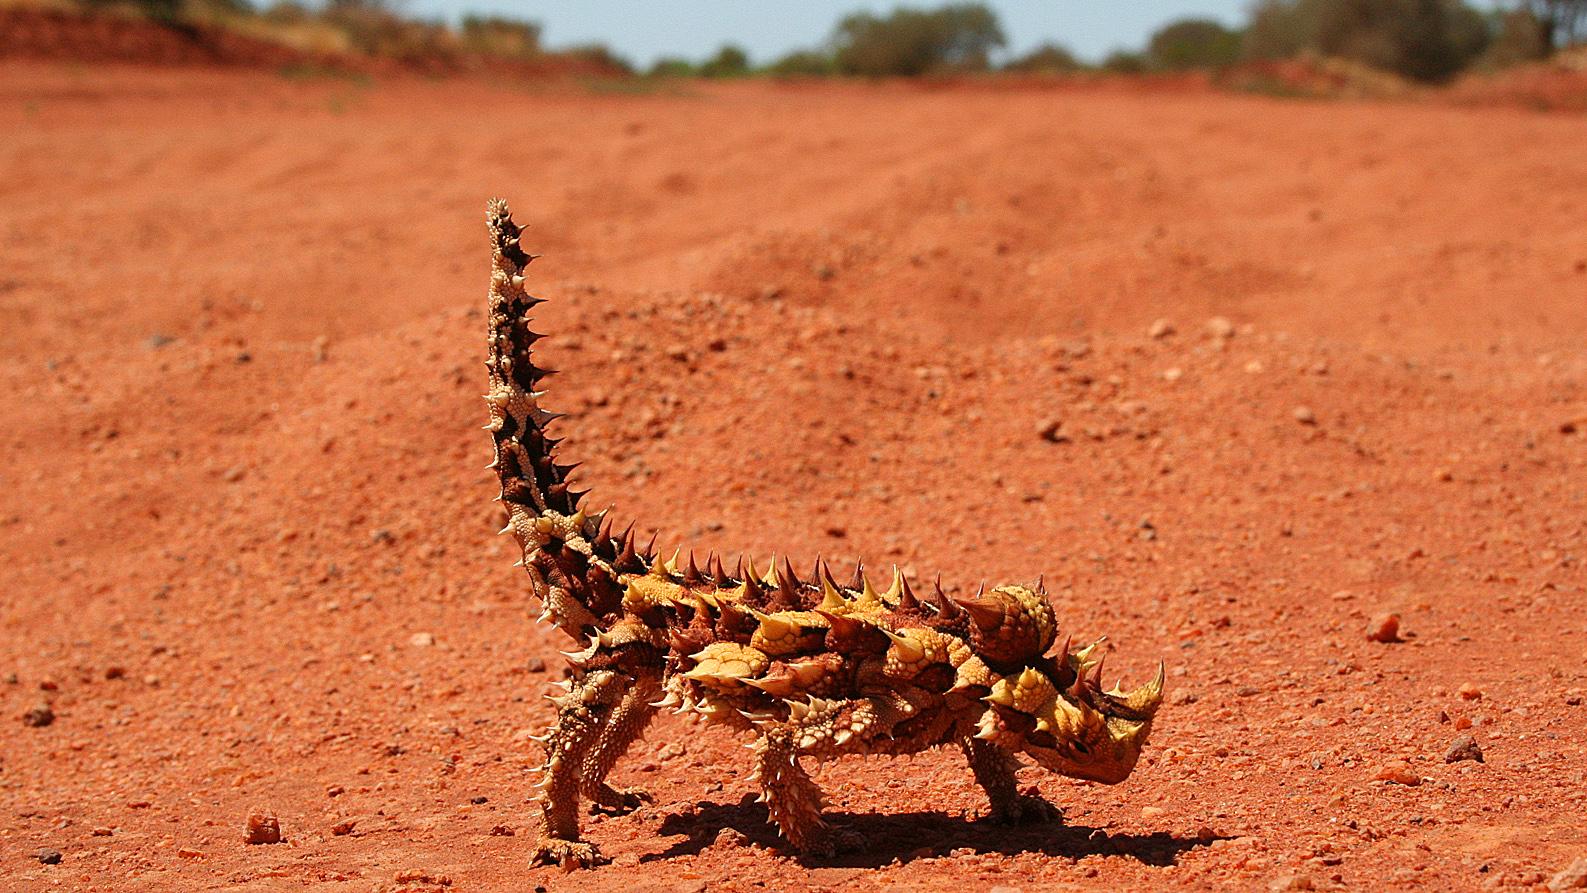 A thorny devil (Moloch horridus), endemic to Australia, is one of the stranger denizens of the desert.